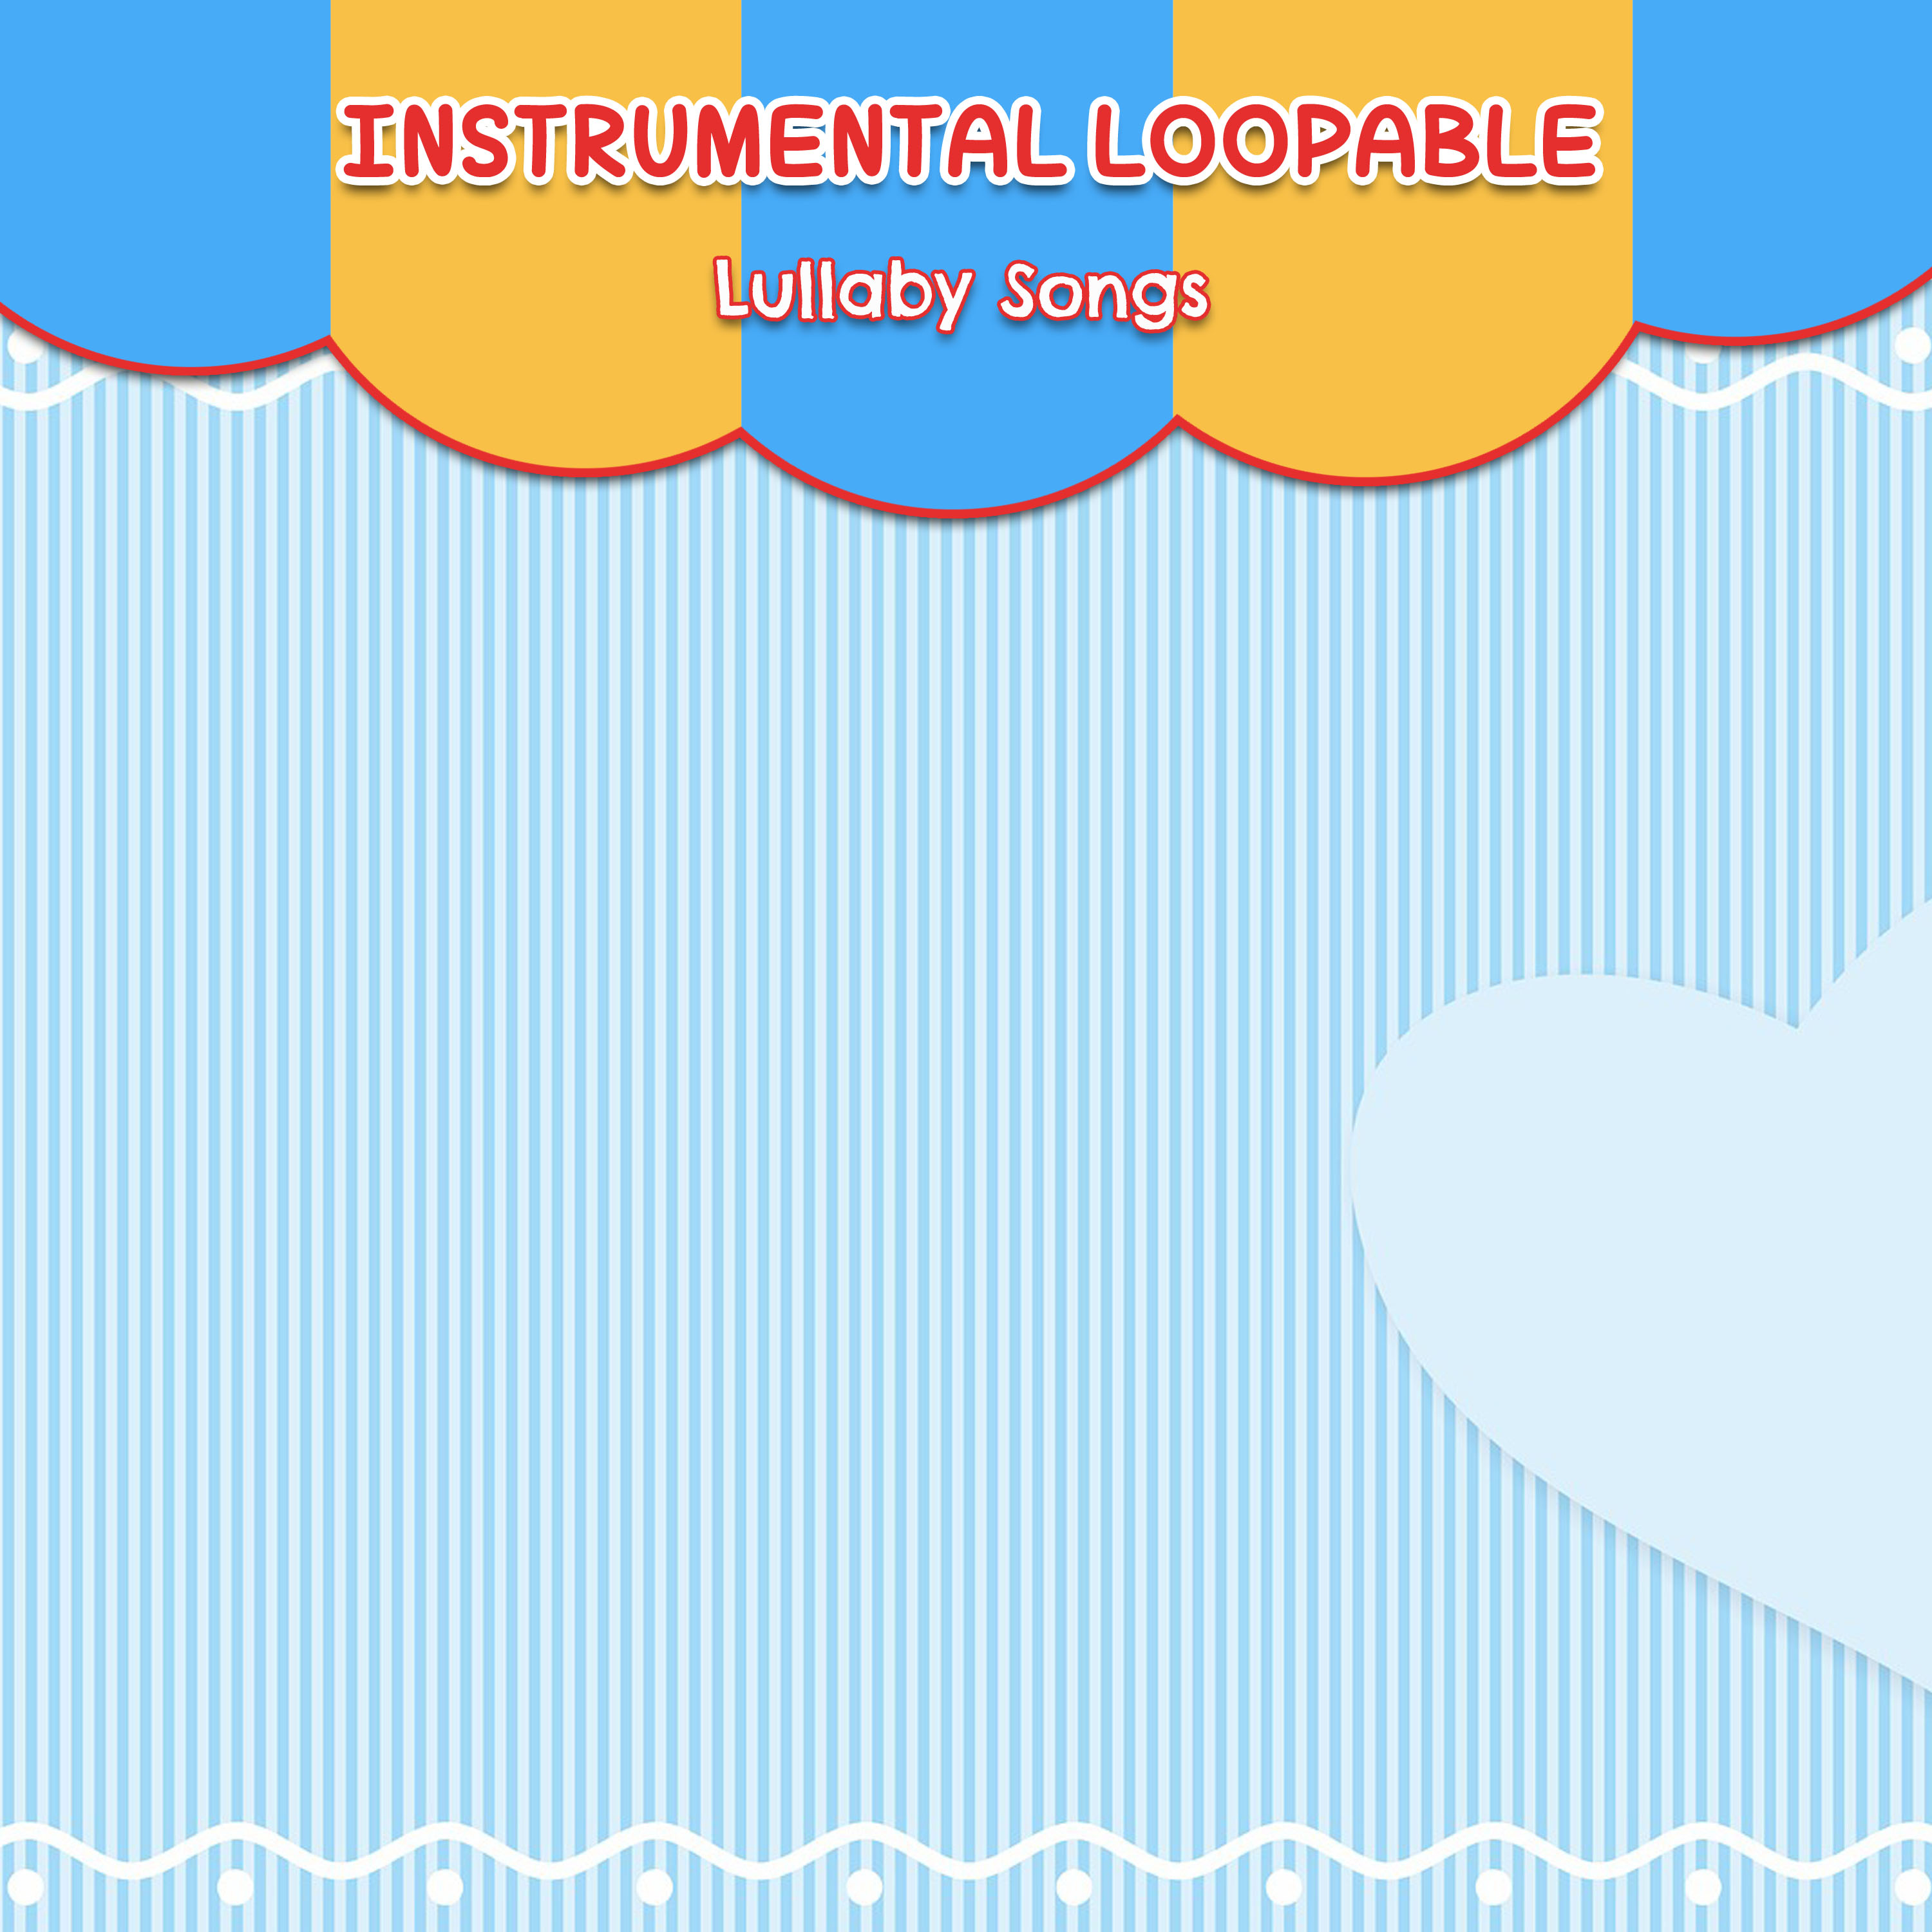 12 Instrumental Loopable Lullabies Songs